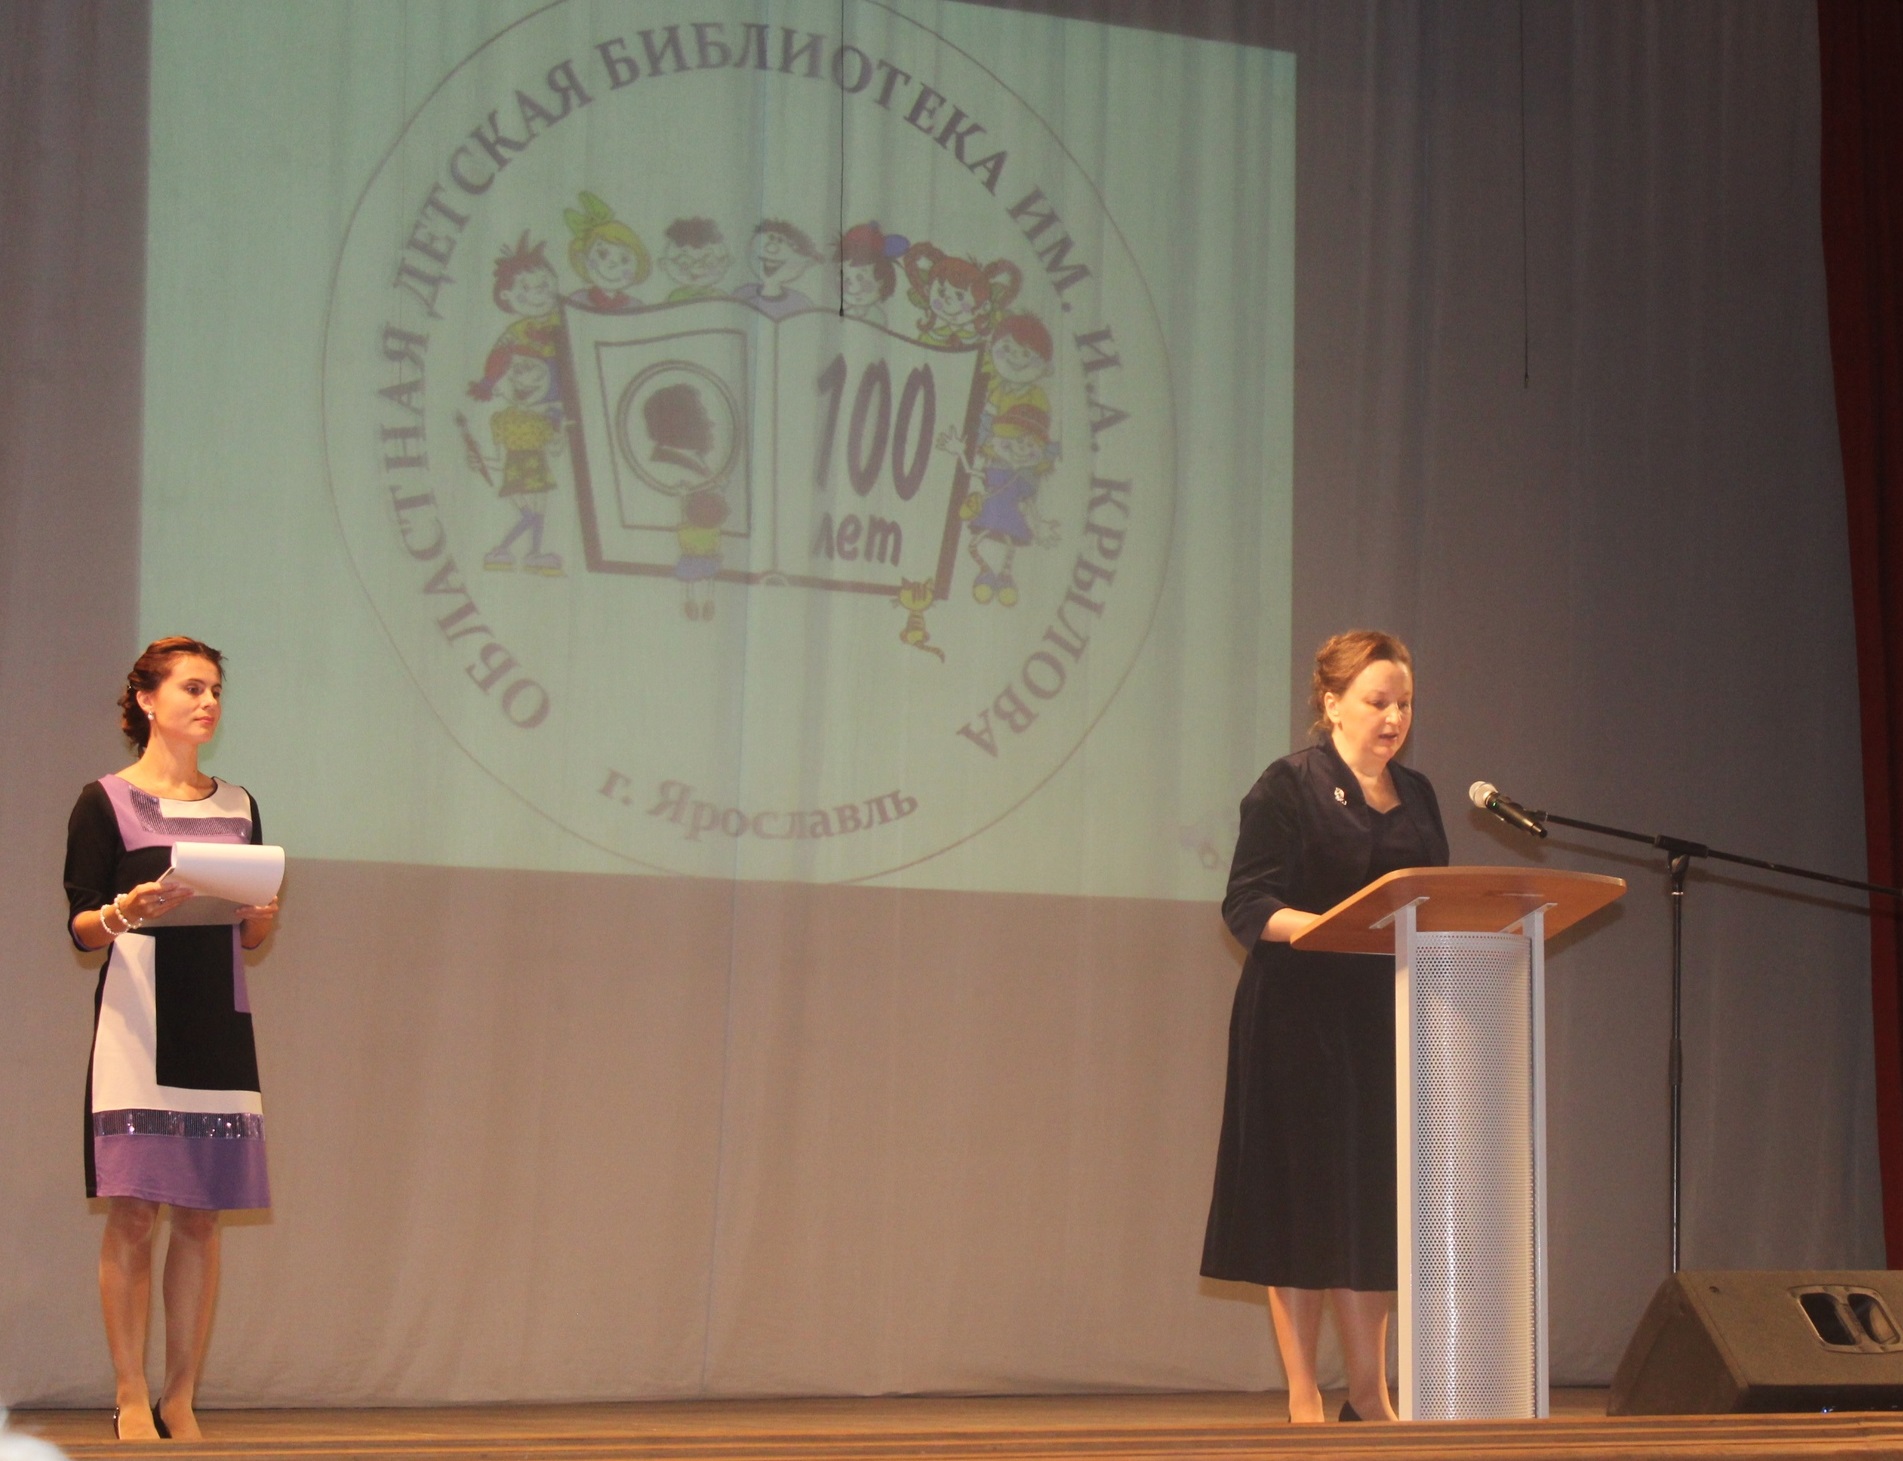 Ивановцы творчески поздравили одну из старейших детских библиотек страны